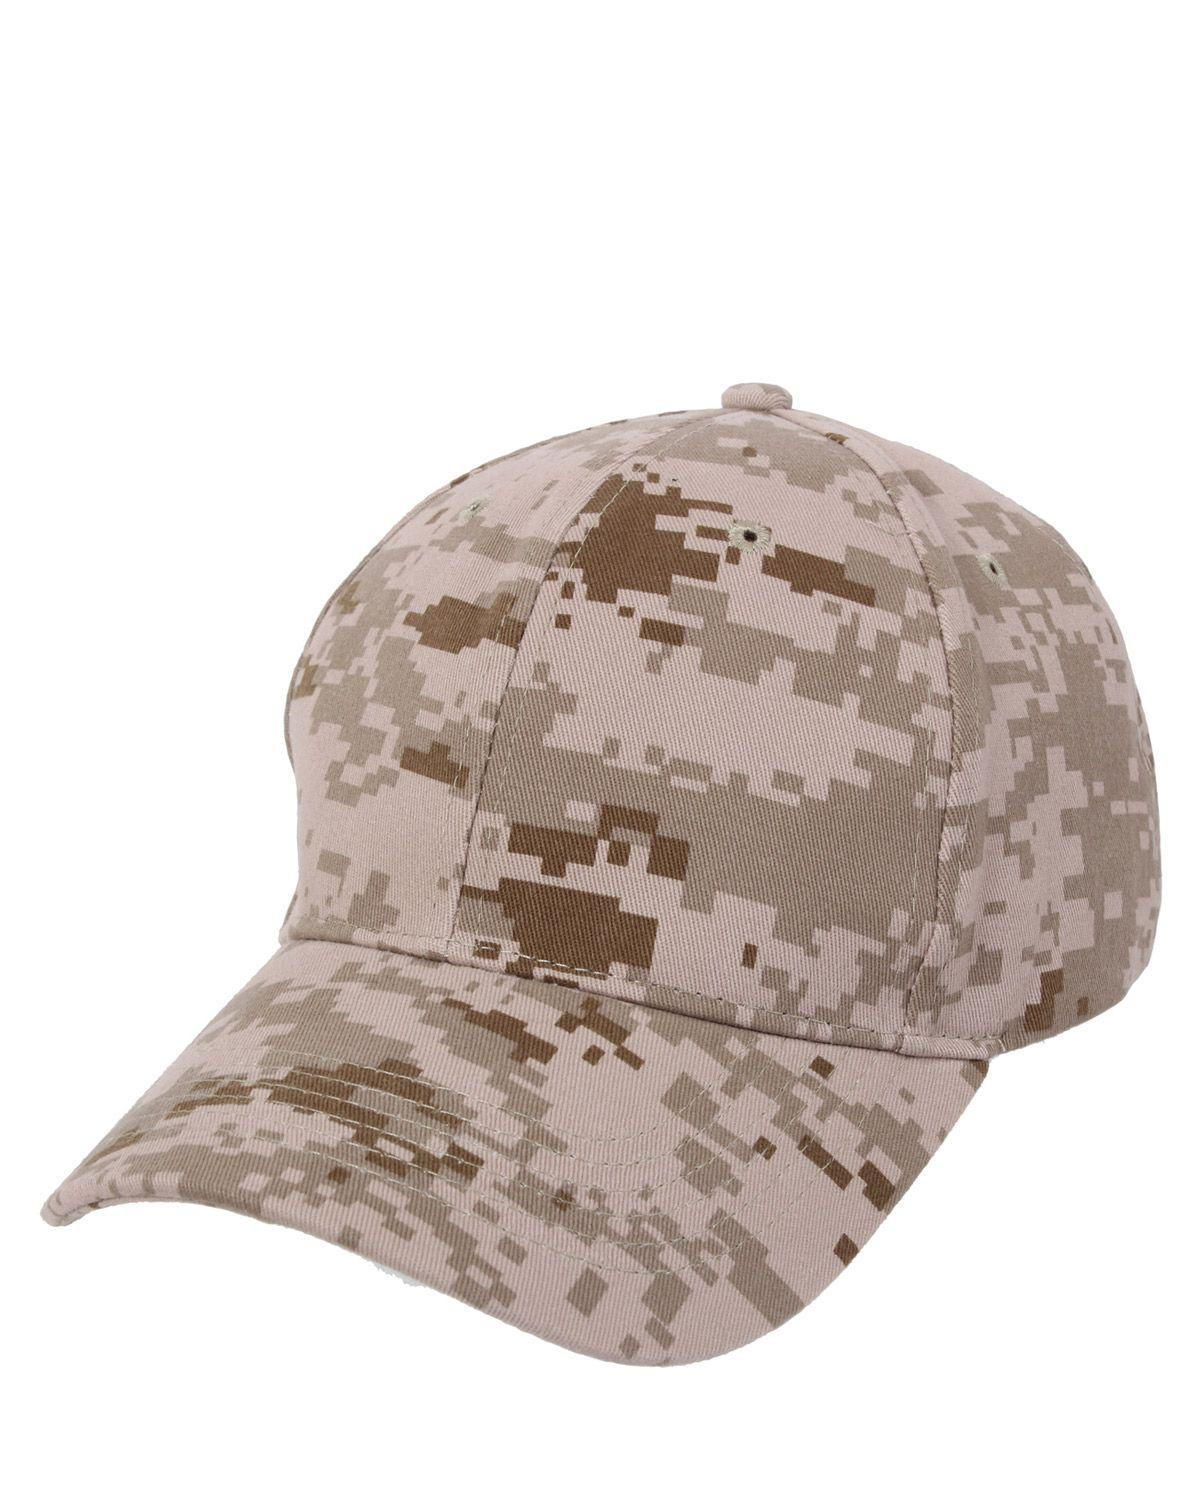 kasket, army caps militær hatte | Army